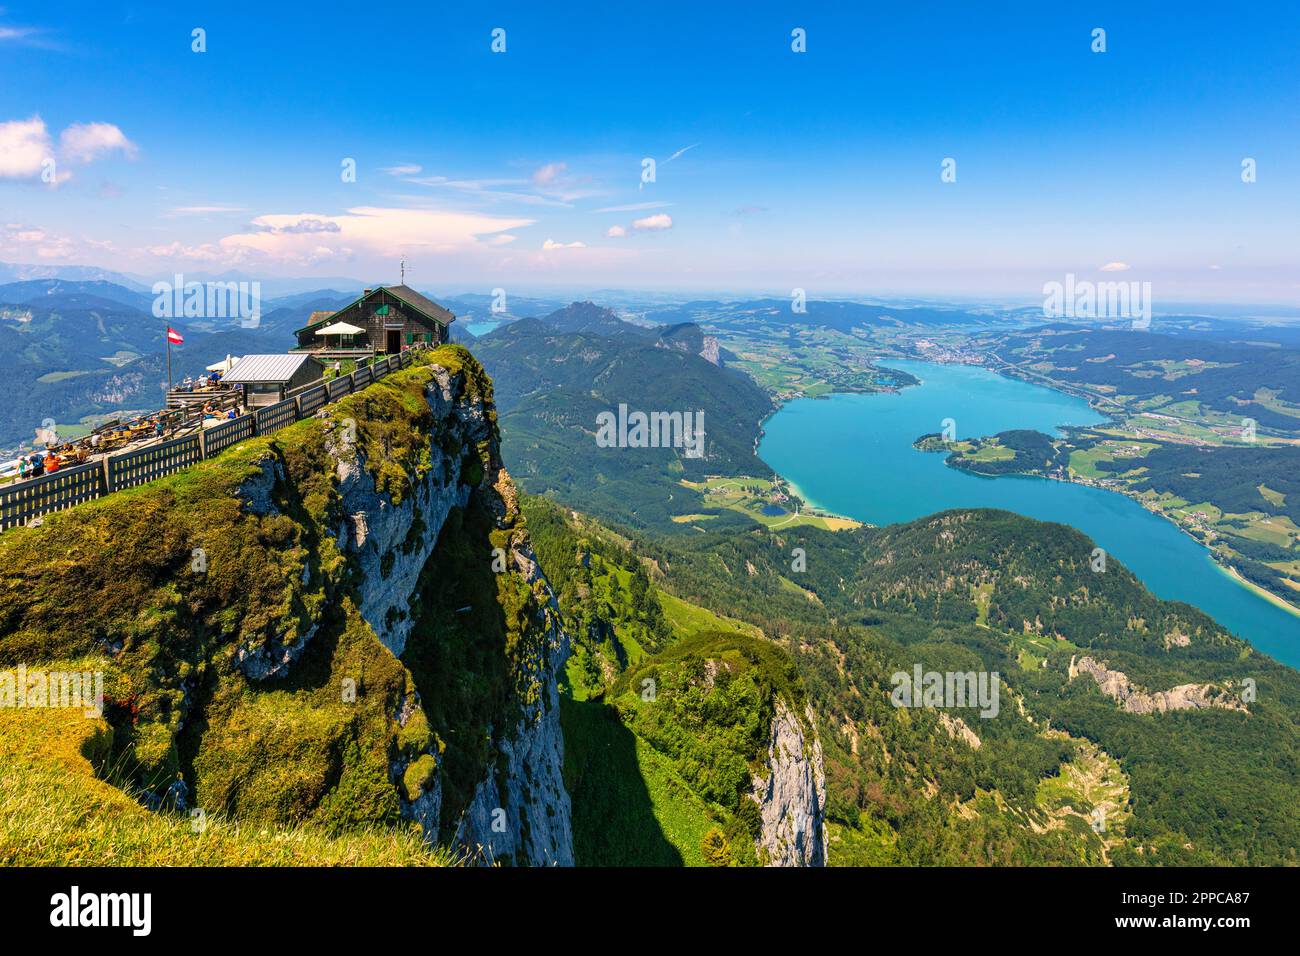 Schafberges aufgenommen, Mountain landscape in Salzkammergut, Upper Austria. View from Schafberg peak to Mondsee, Austria. Himmelspforte Schafberg in Stock Photo